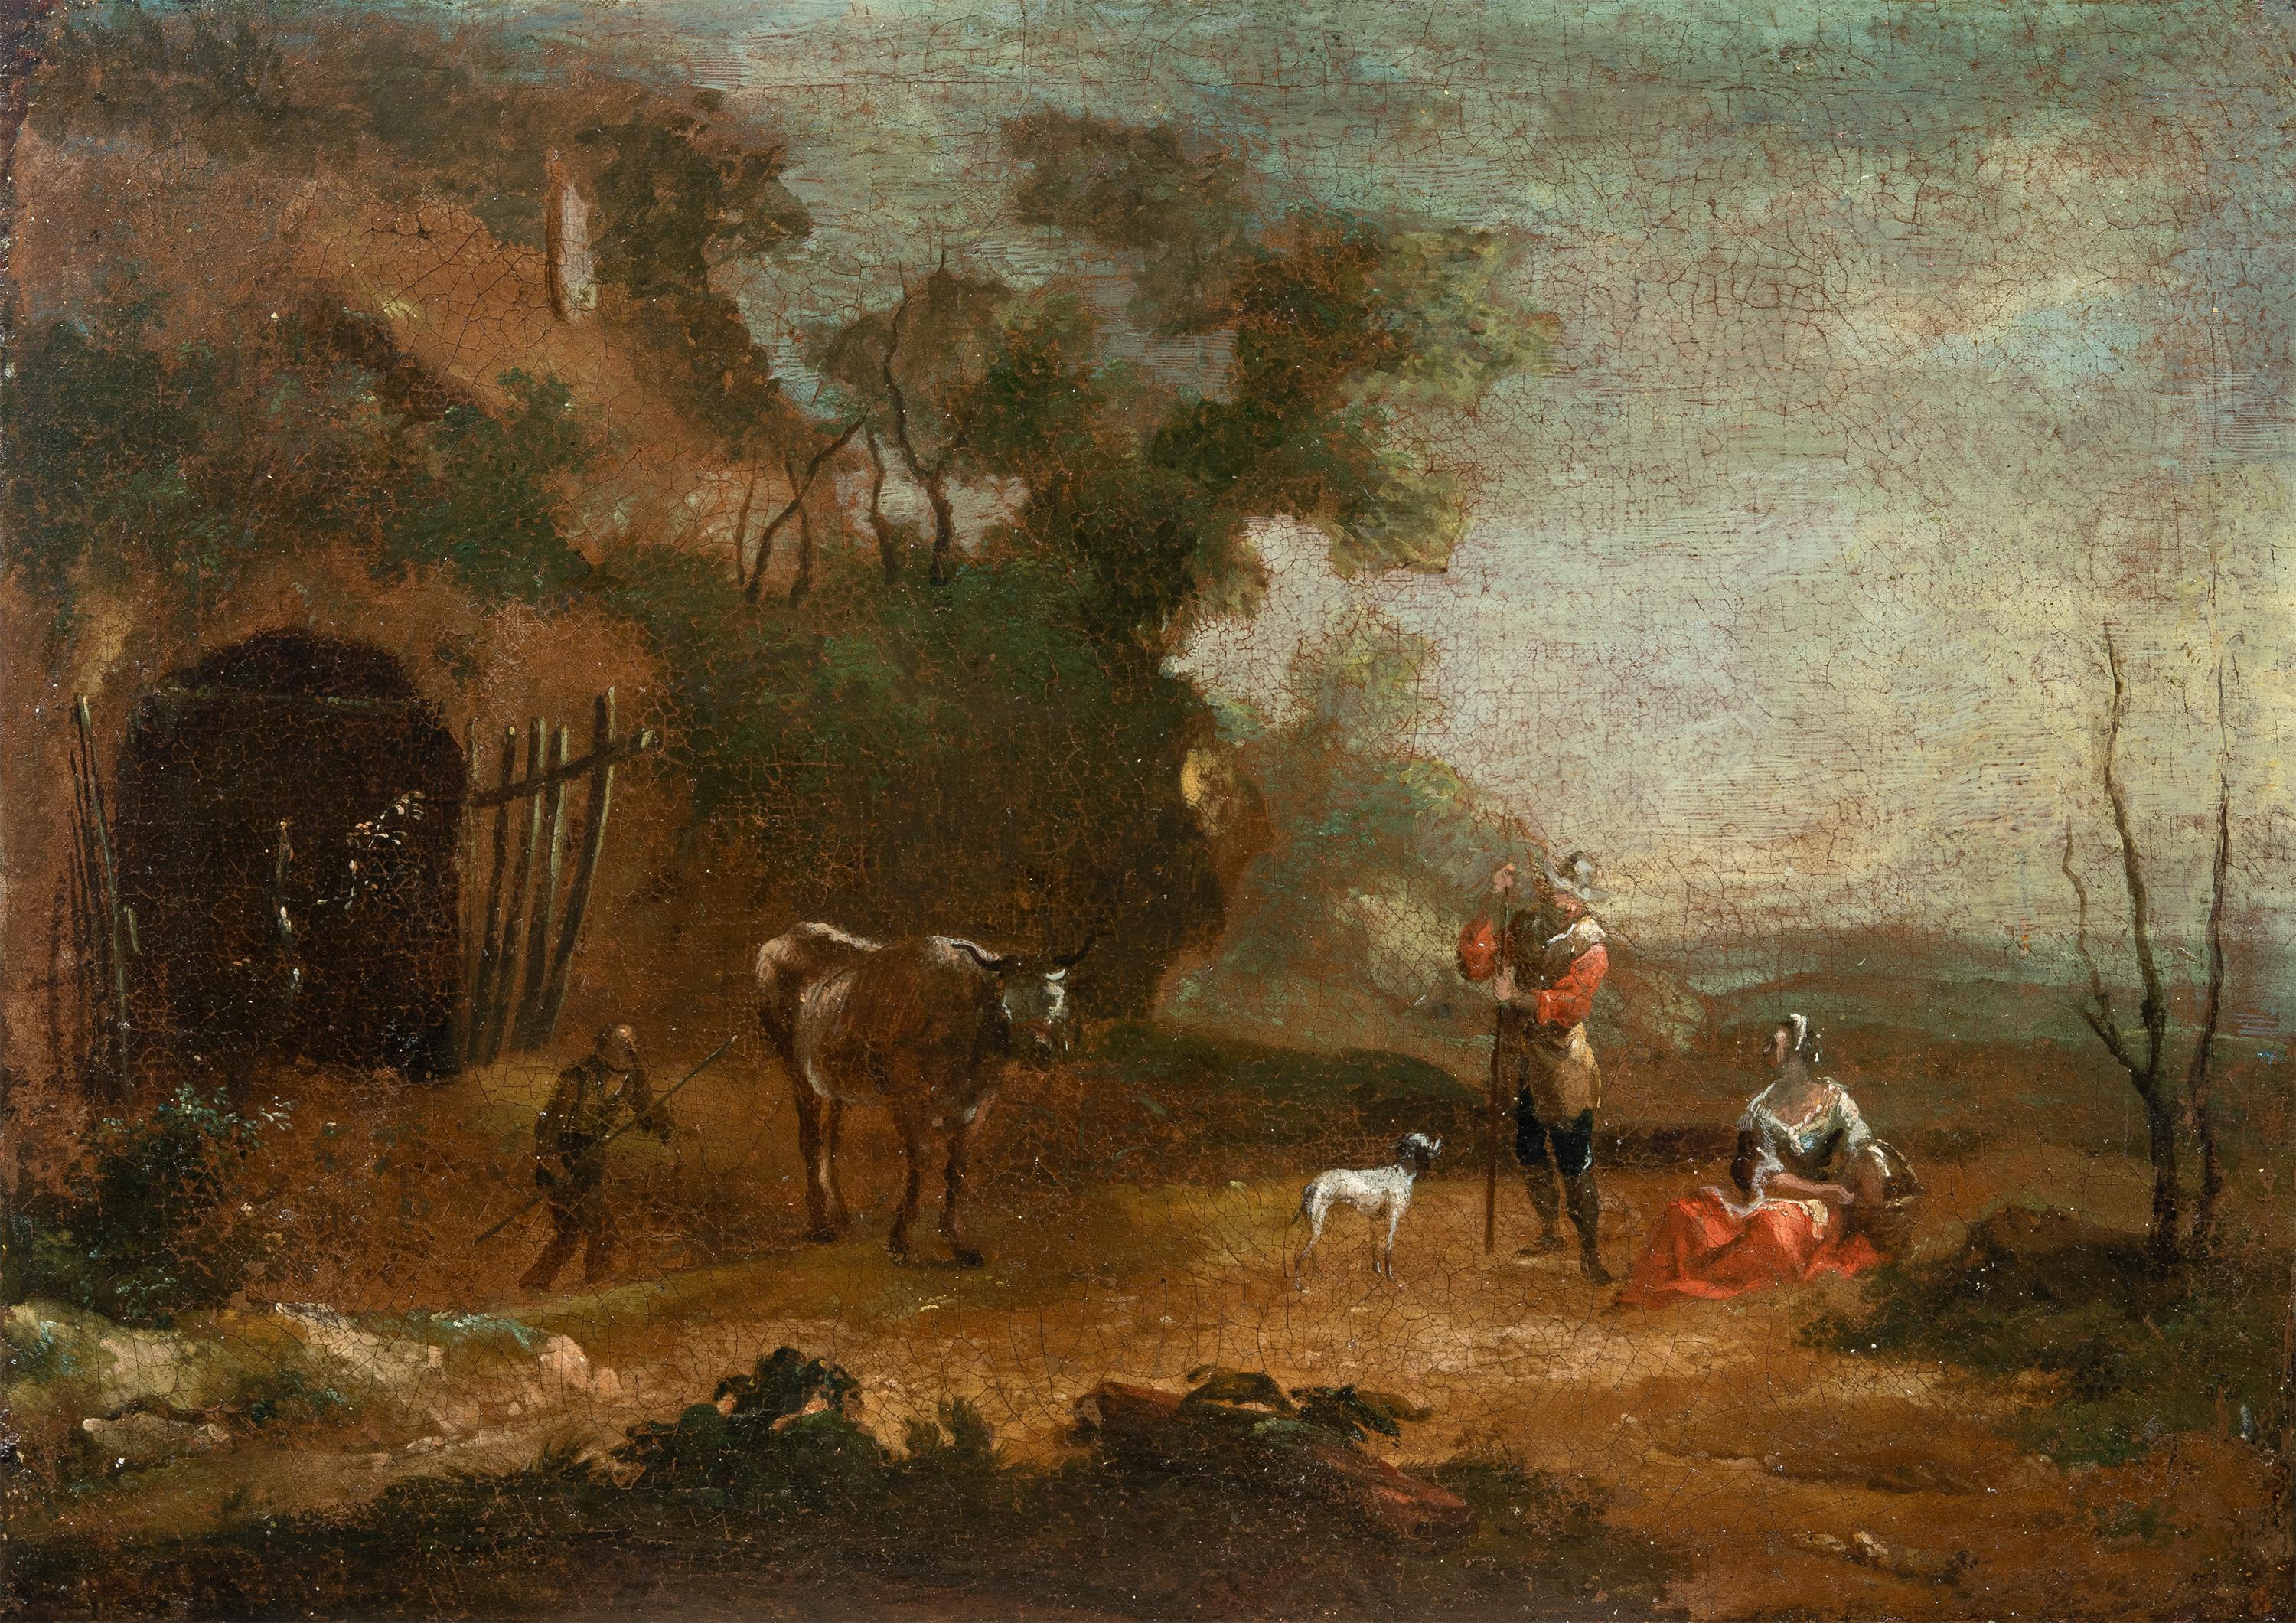 Antiker italienischer Maler des 18. Jahrhunderts – Landschaftsmalerei mit Figuren – Öl auf Leinwand